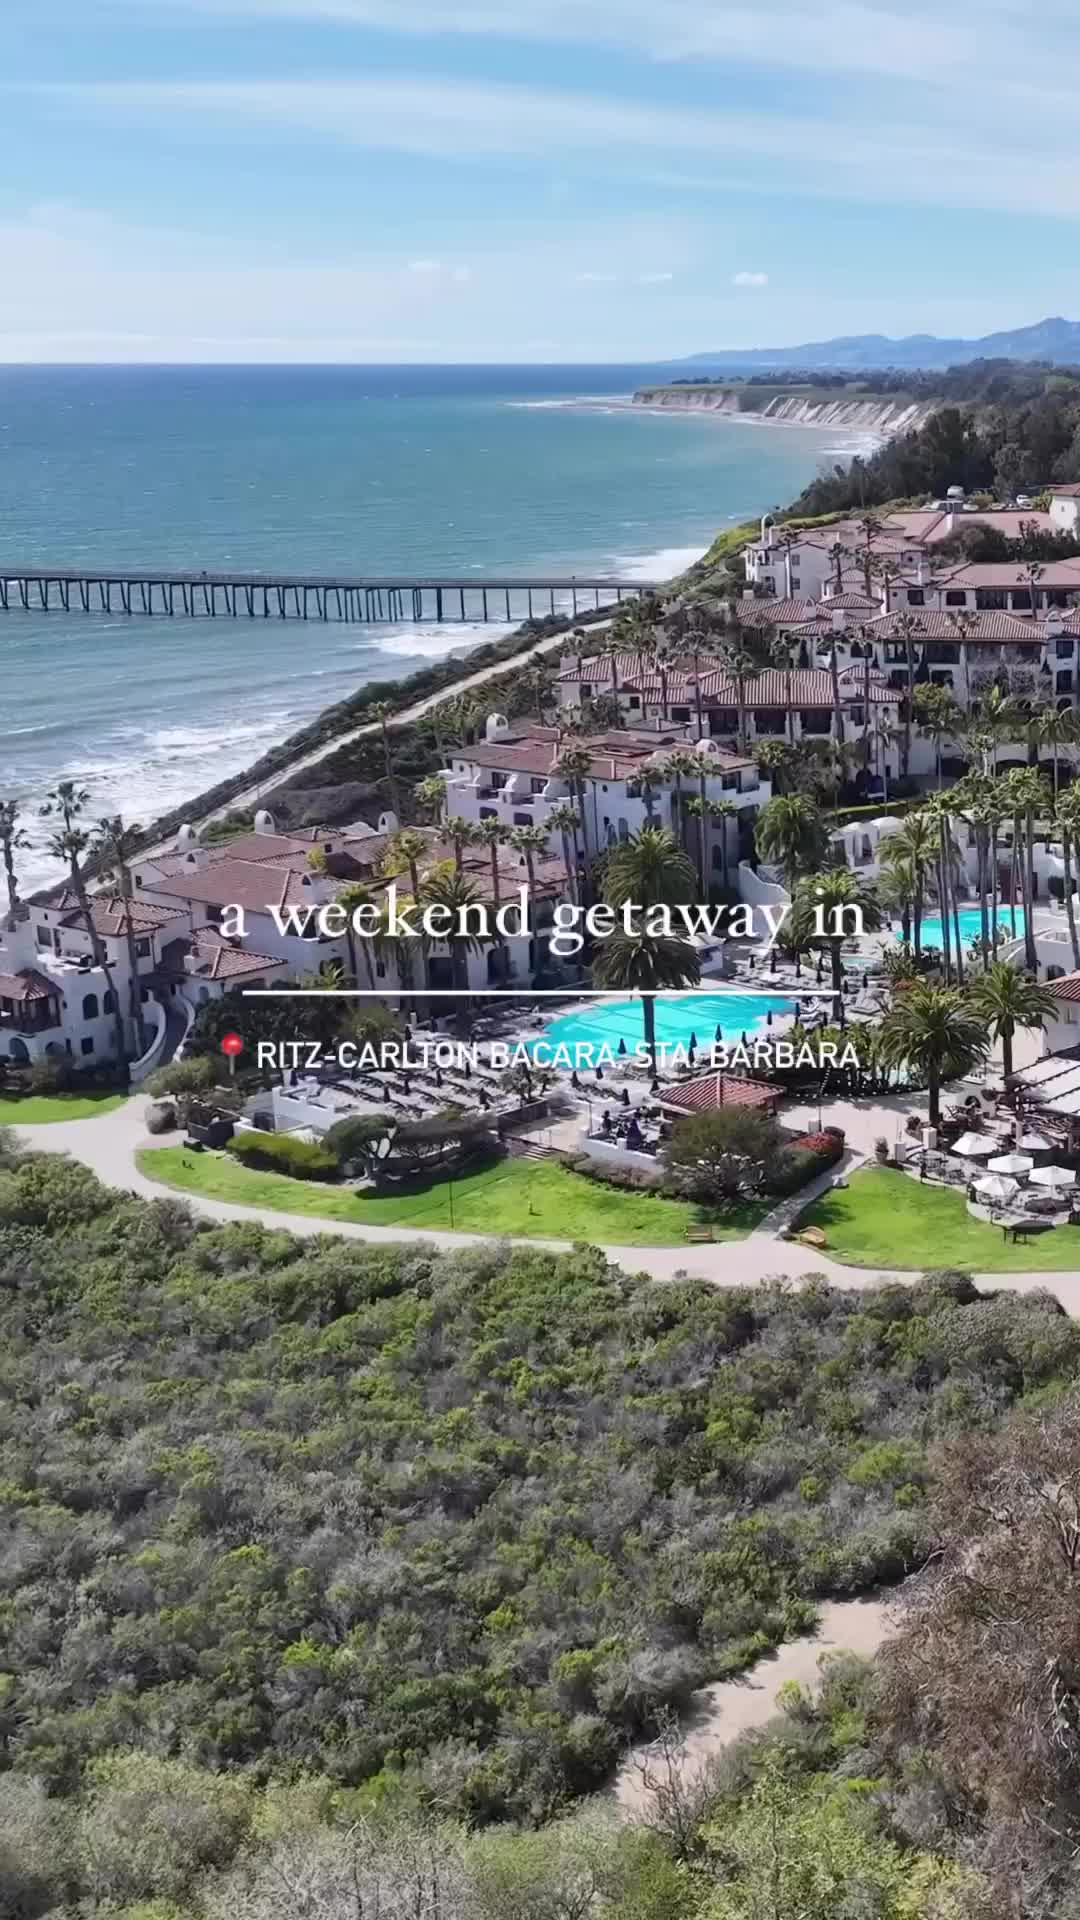 Luxurious Stay at The Ritz-Carlton Bacara, Santa Barbara